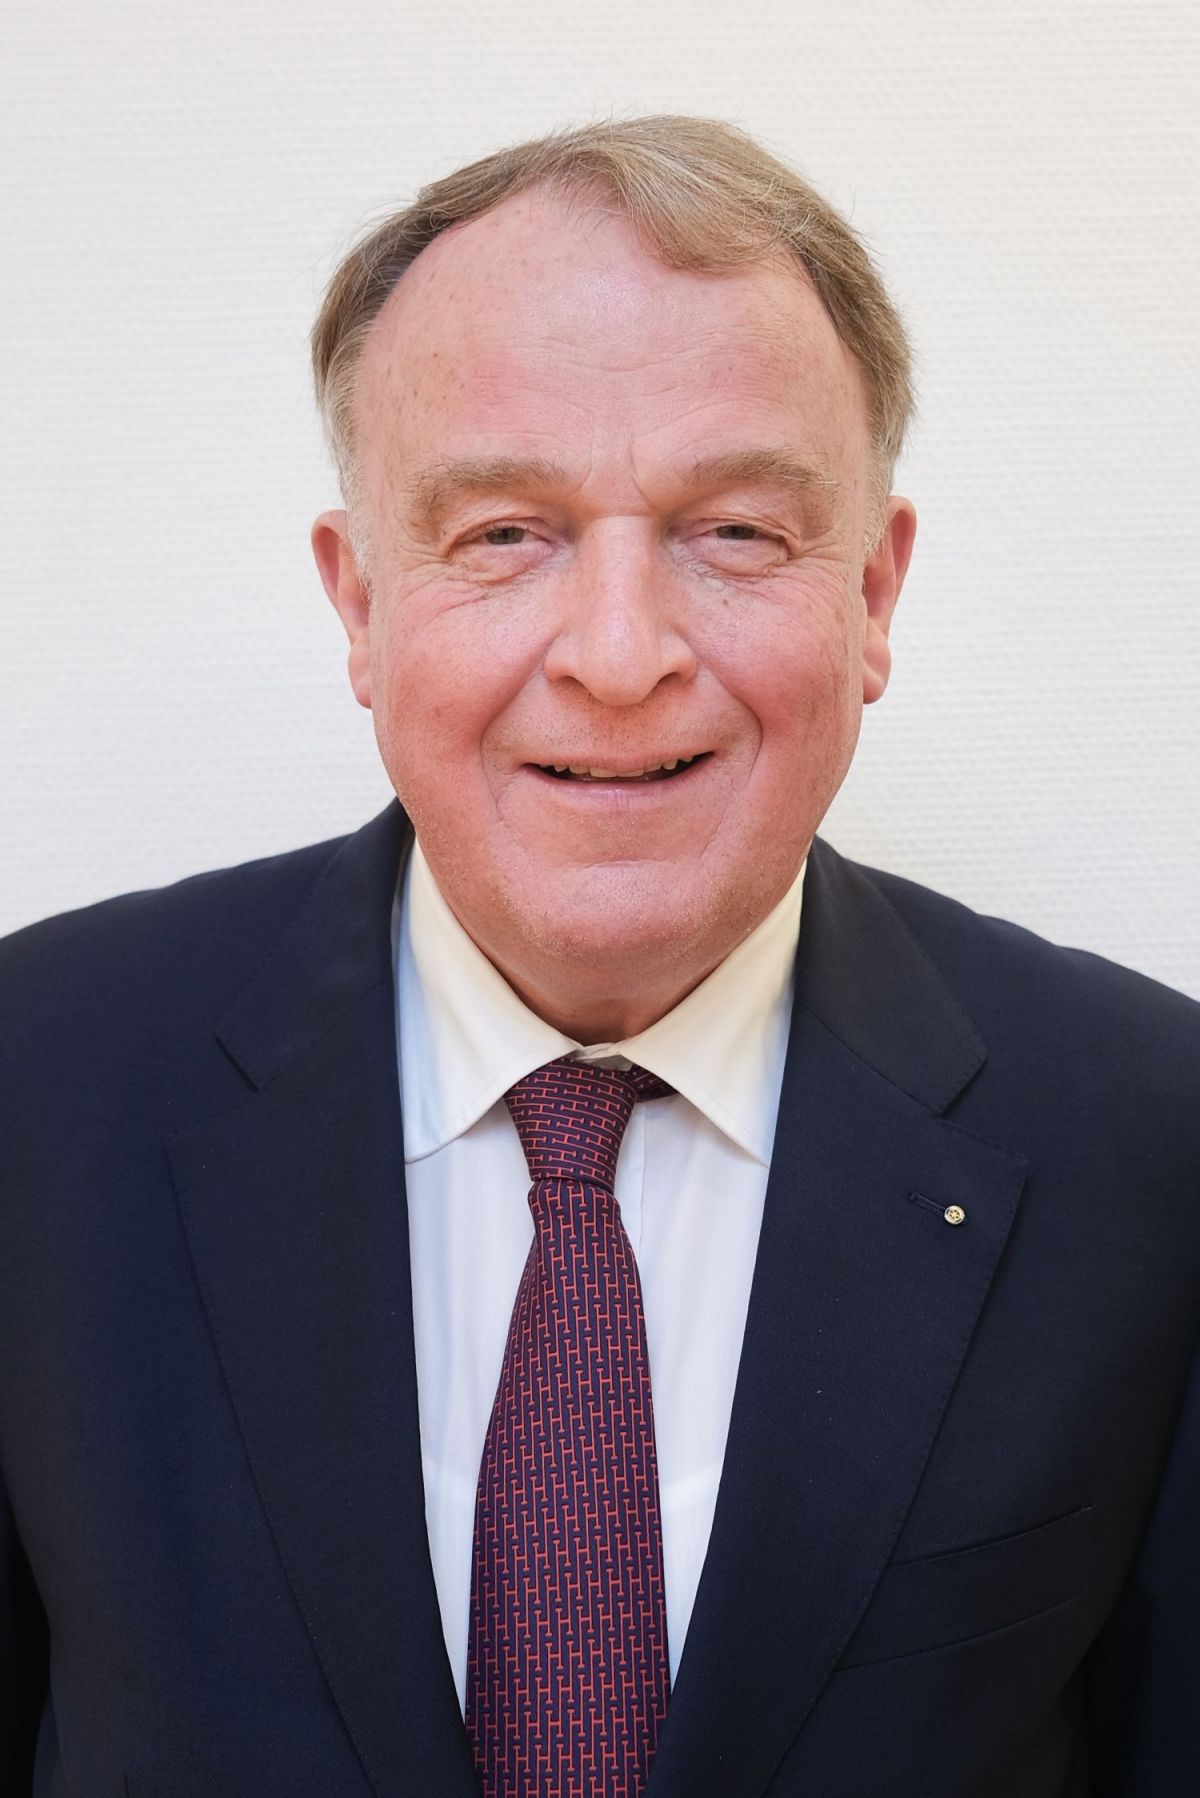 Walter Viegener ist neuer Präsident der IHK Siegen von IHK Siegen